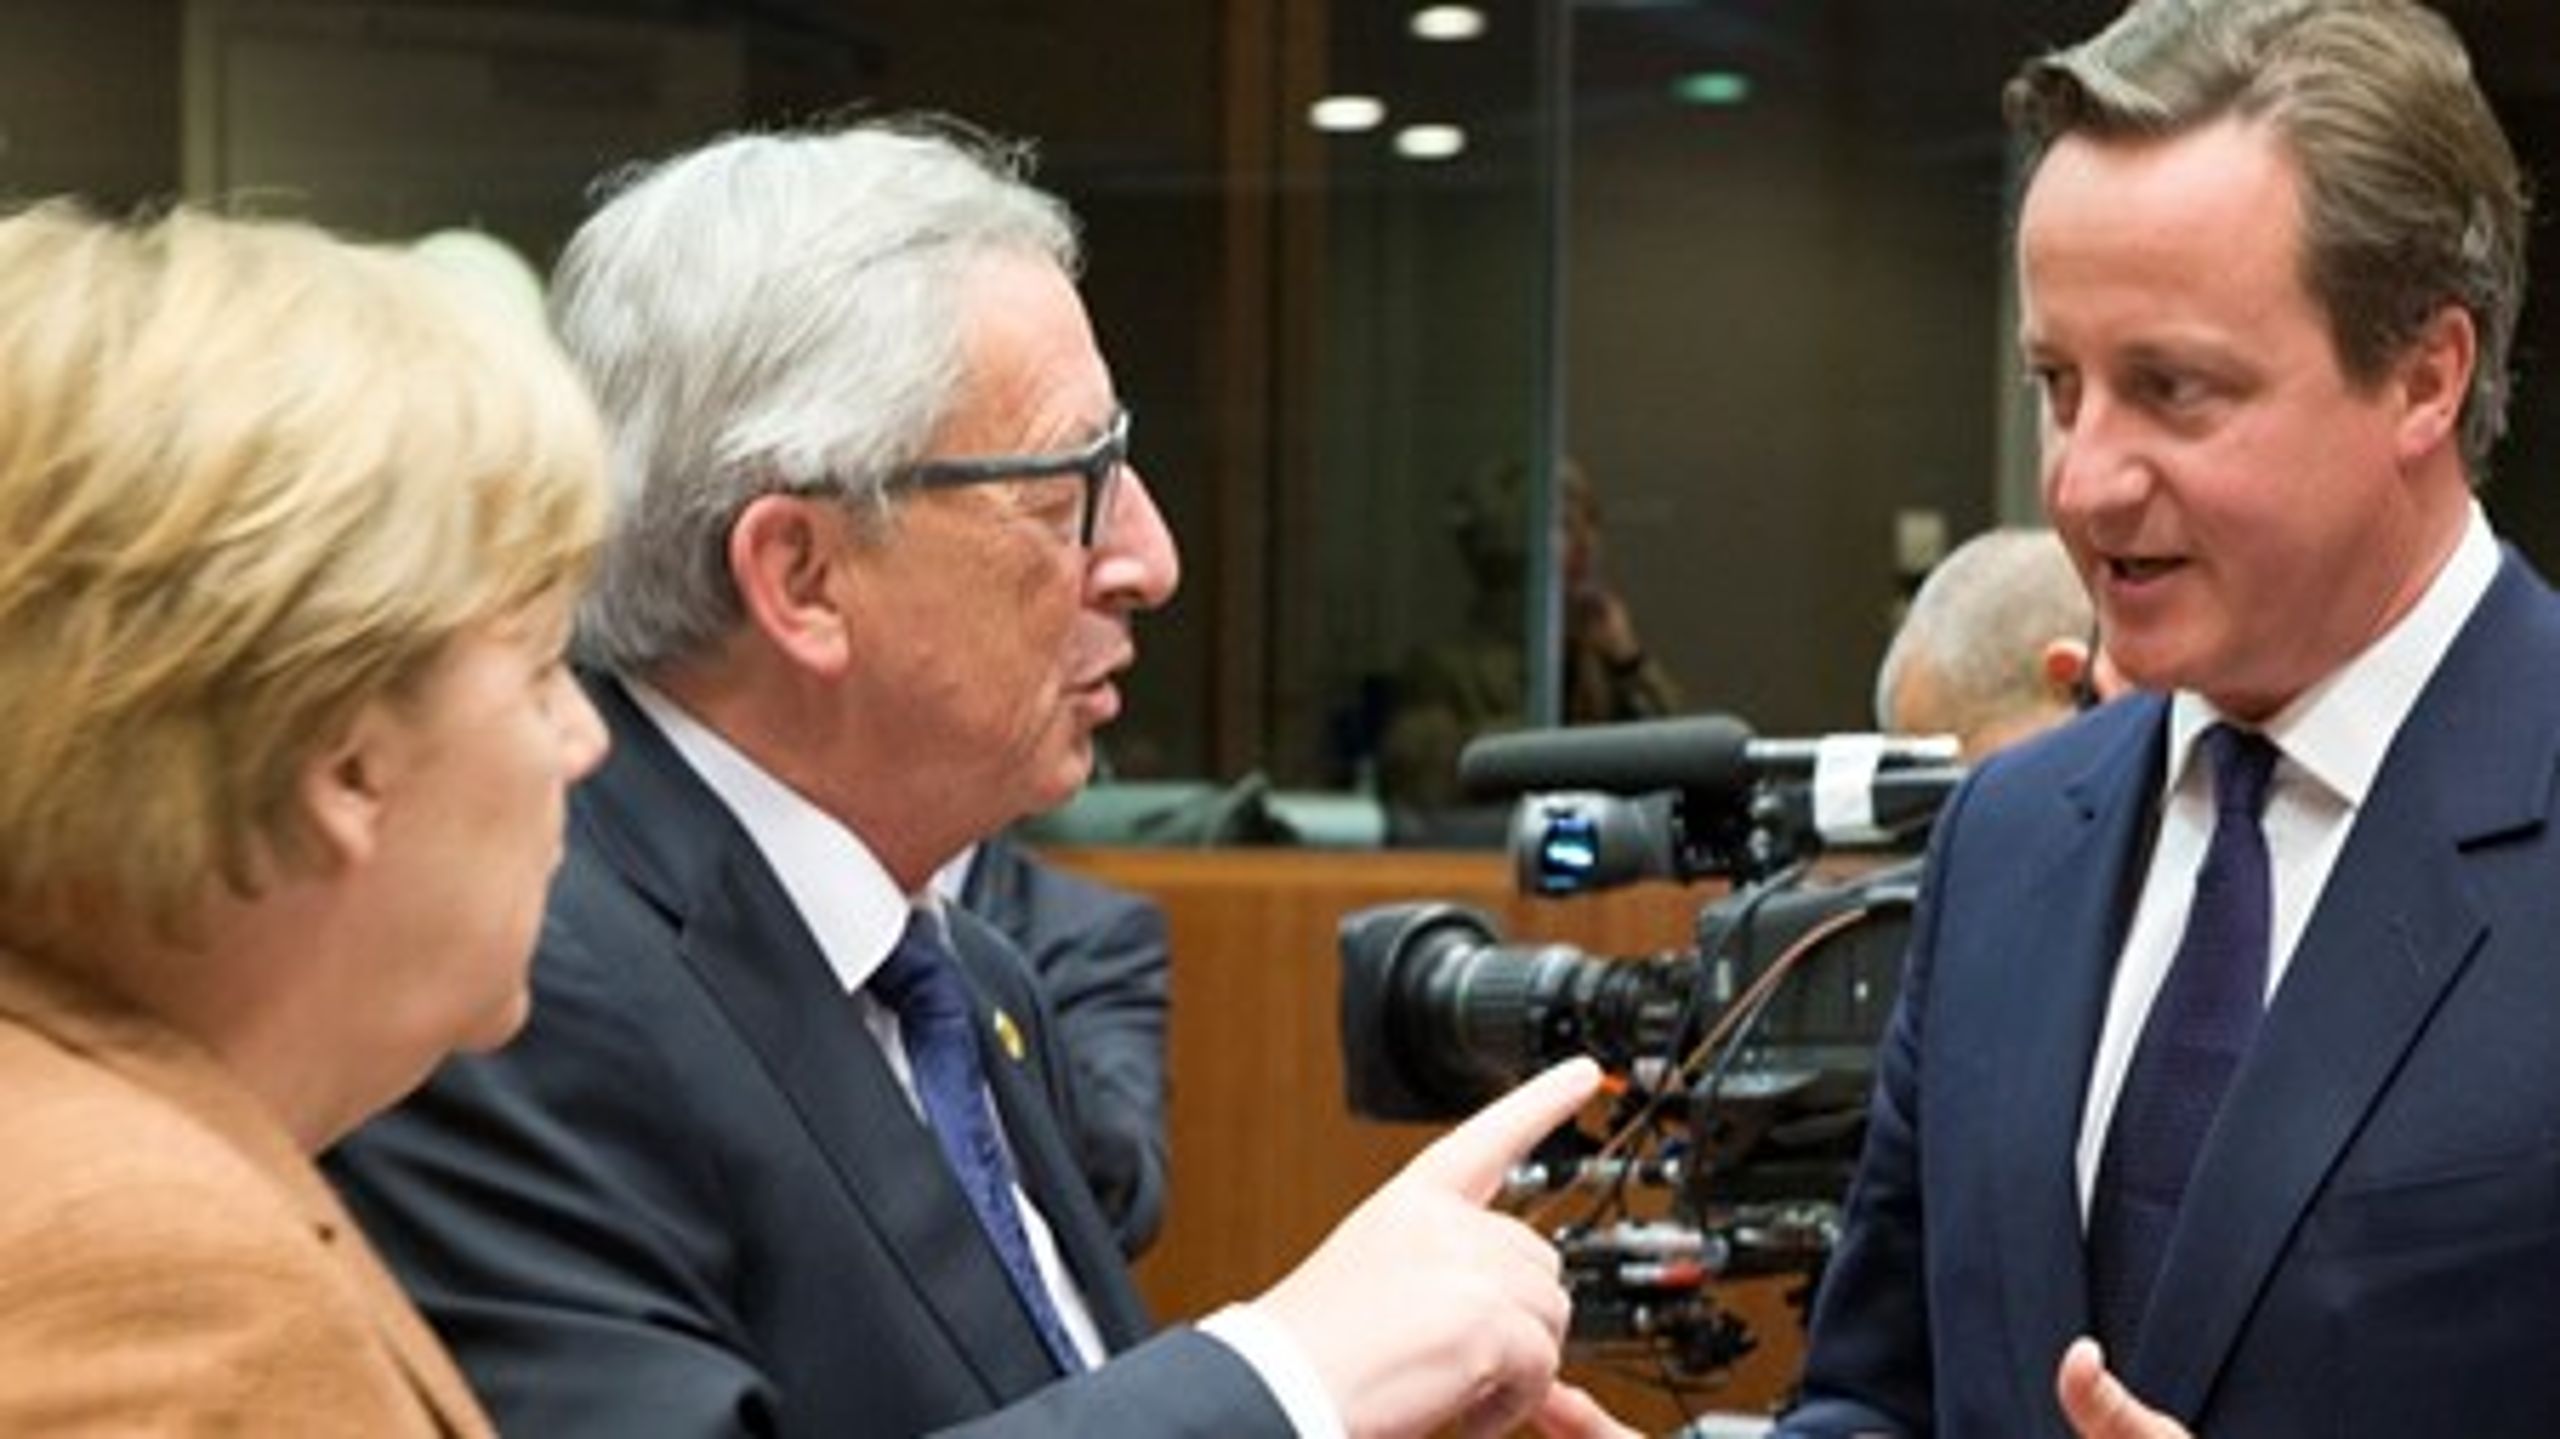 David Cameron i samtale med EU-kommissionsformand Jean-Claude Juncker og den tyske kansler, Angela Merkel. Ingen af dem er vilde med hans idé om at kunne diskriminere andre EU-borgere.